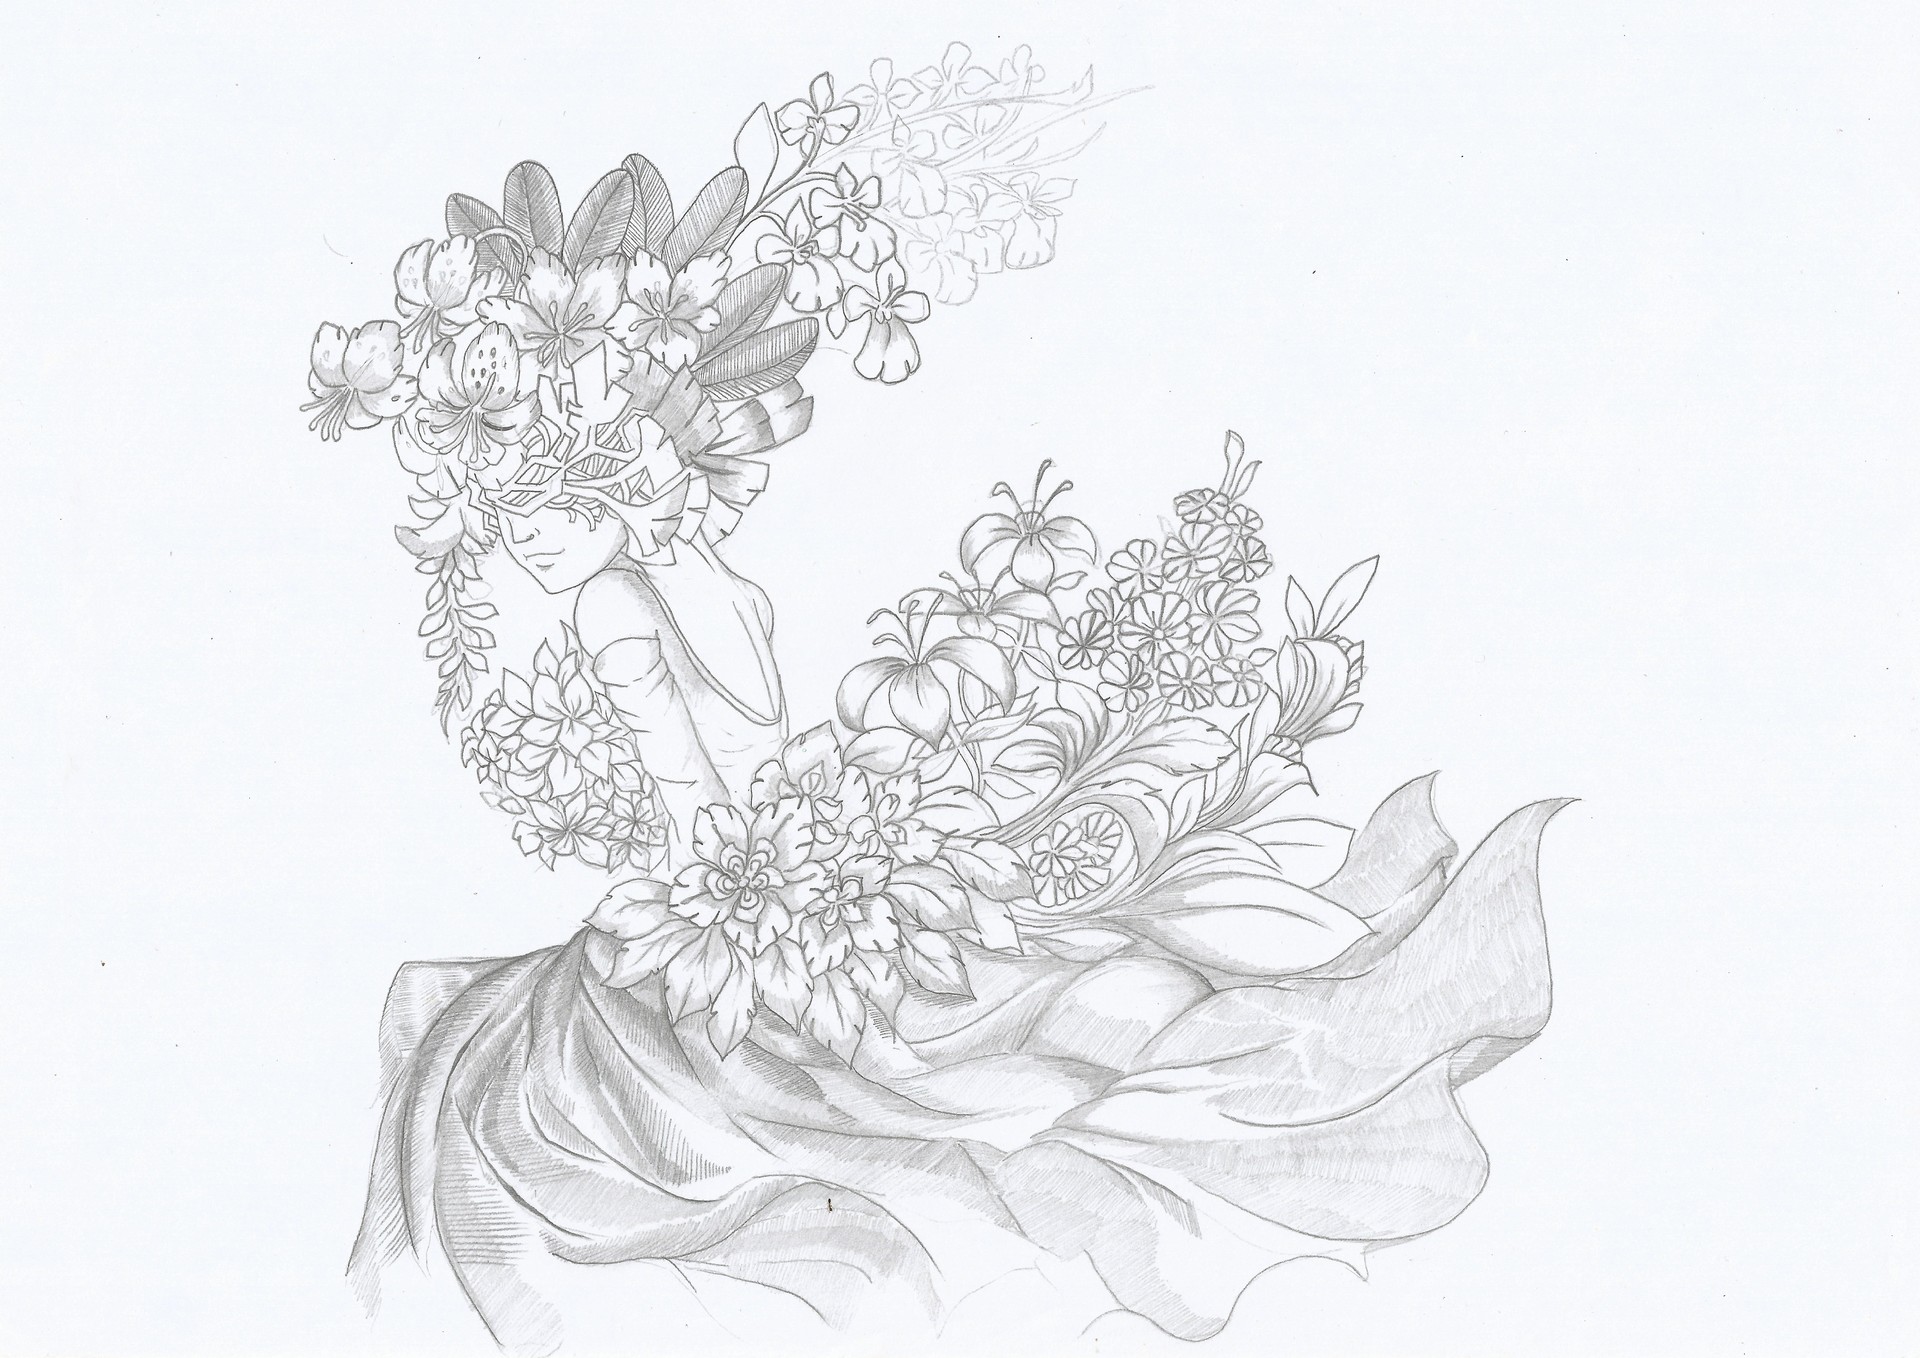 Choi Archie Amano - My Pencil Sketch